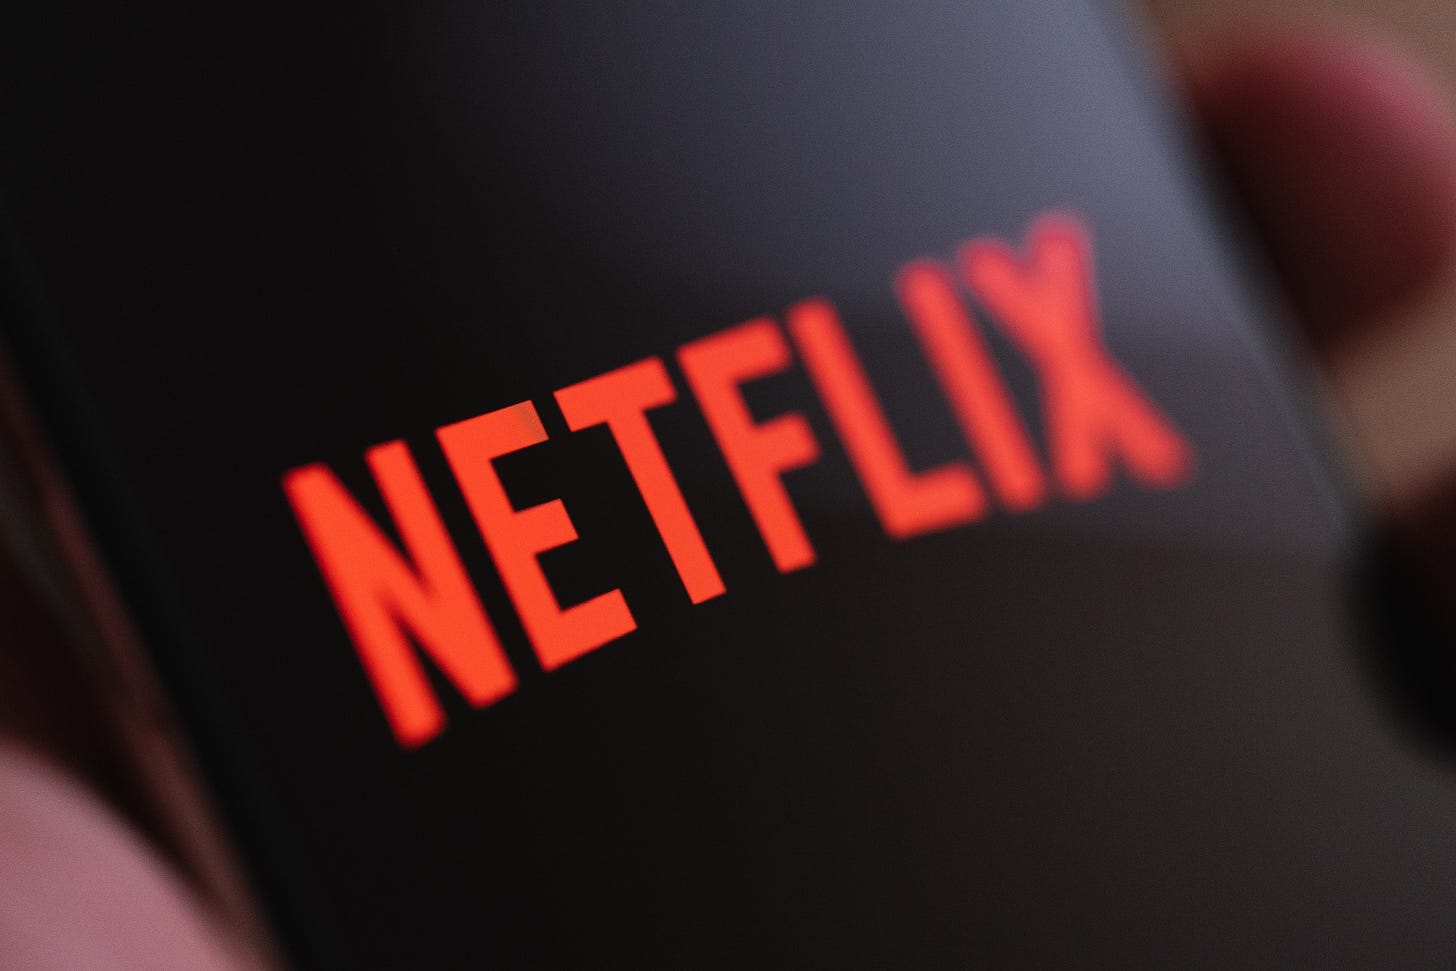 Image of Netflix logo on mobile device